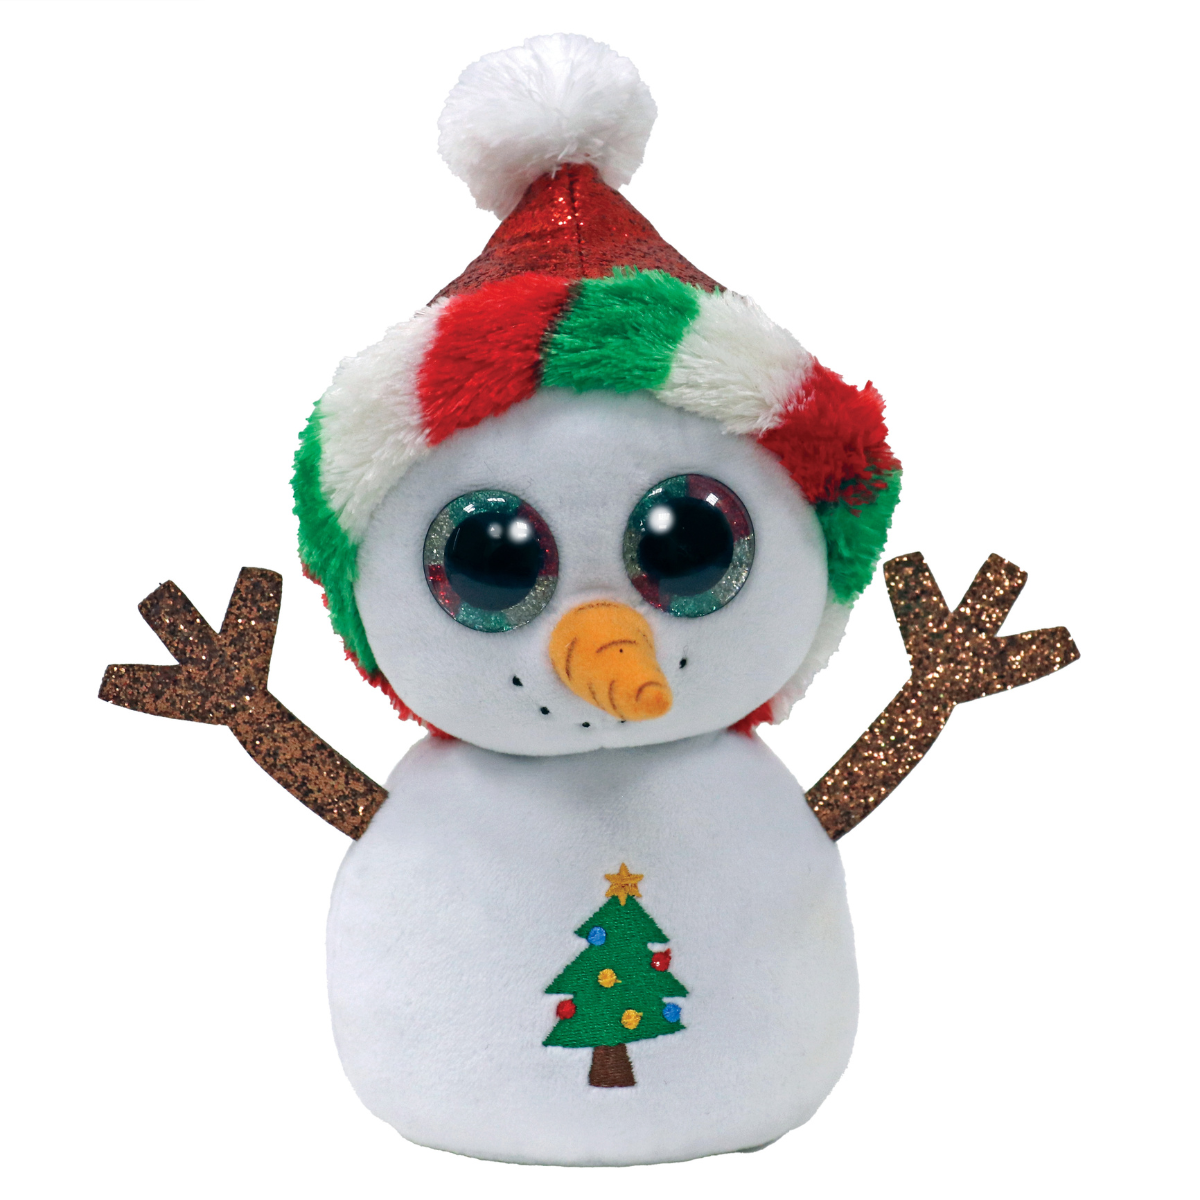 Ty peluche - beanie boos speciale natale neve - misty - occhioni glitter e berretto rosso natalizio - il pupazzo con gli occhi grandi scintillanti - 15 cm - 36533 - TY